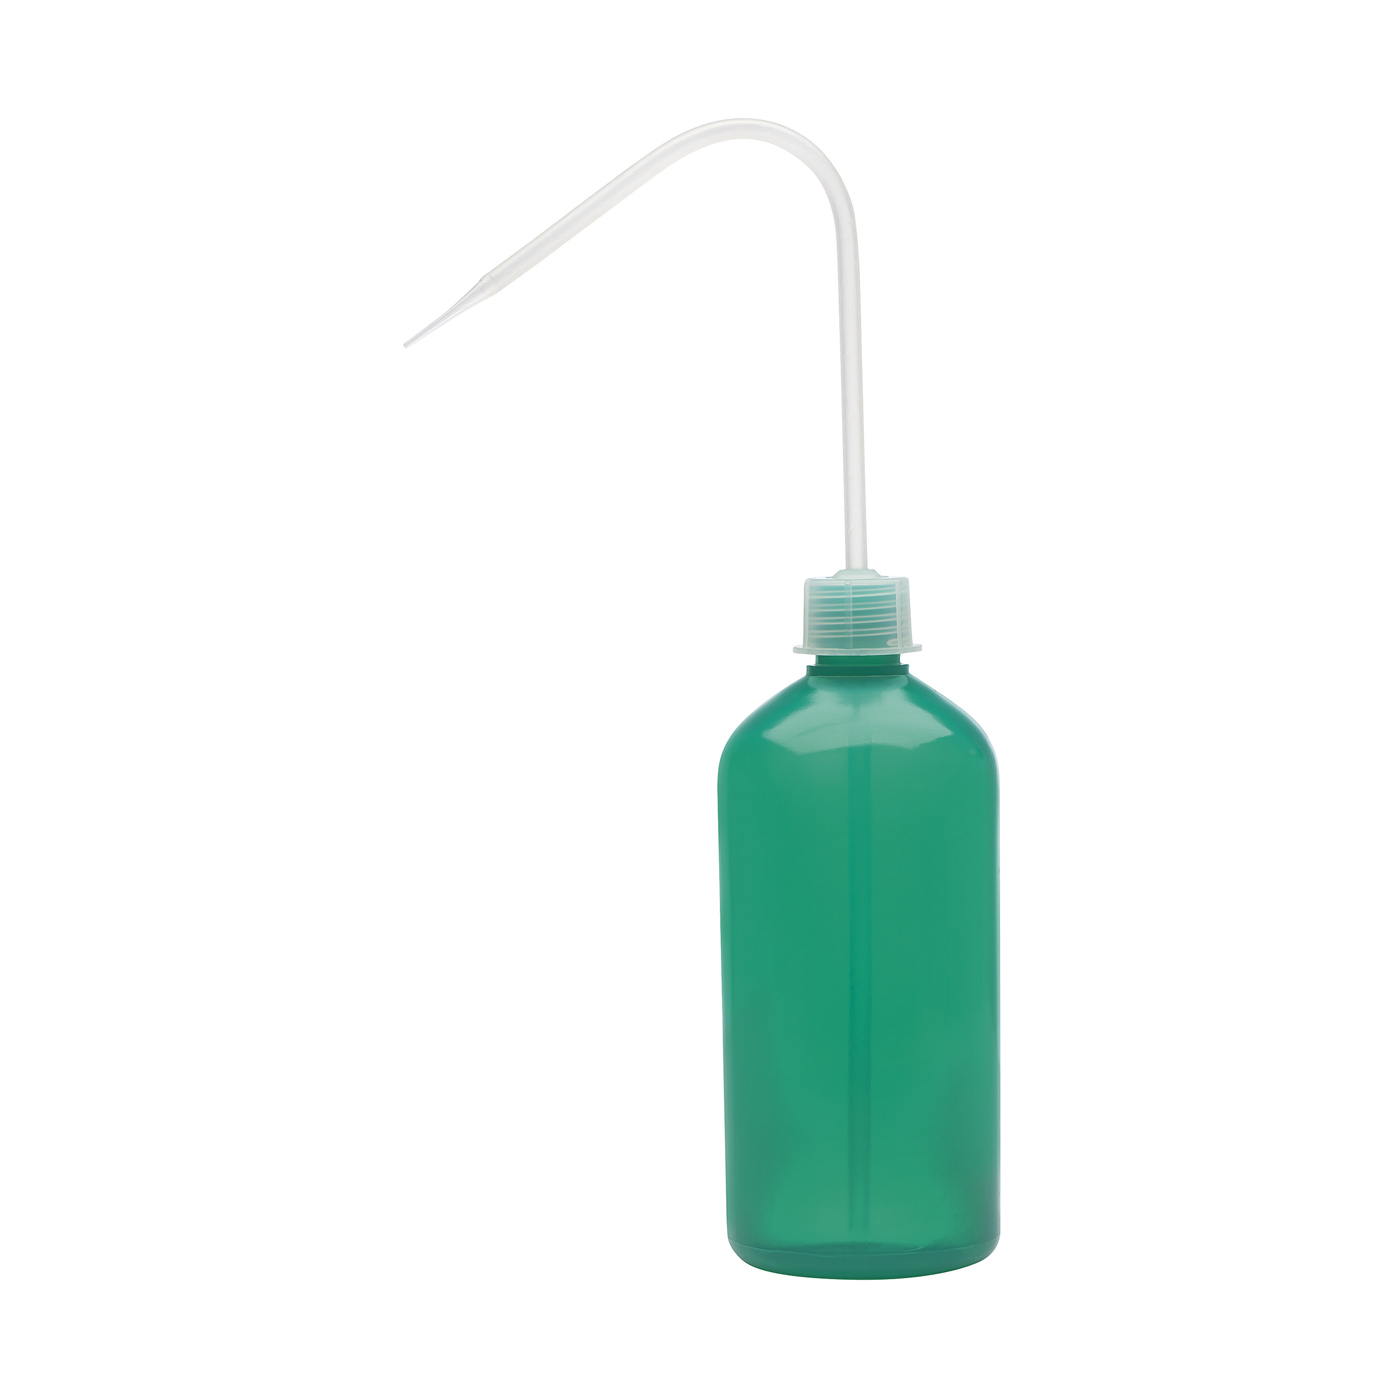 FINO Dosierflasche, grün, 500 ml - 1 Stück